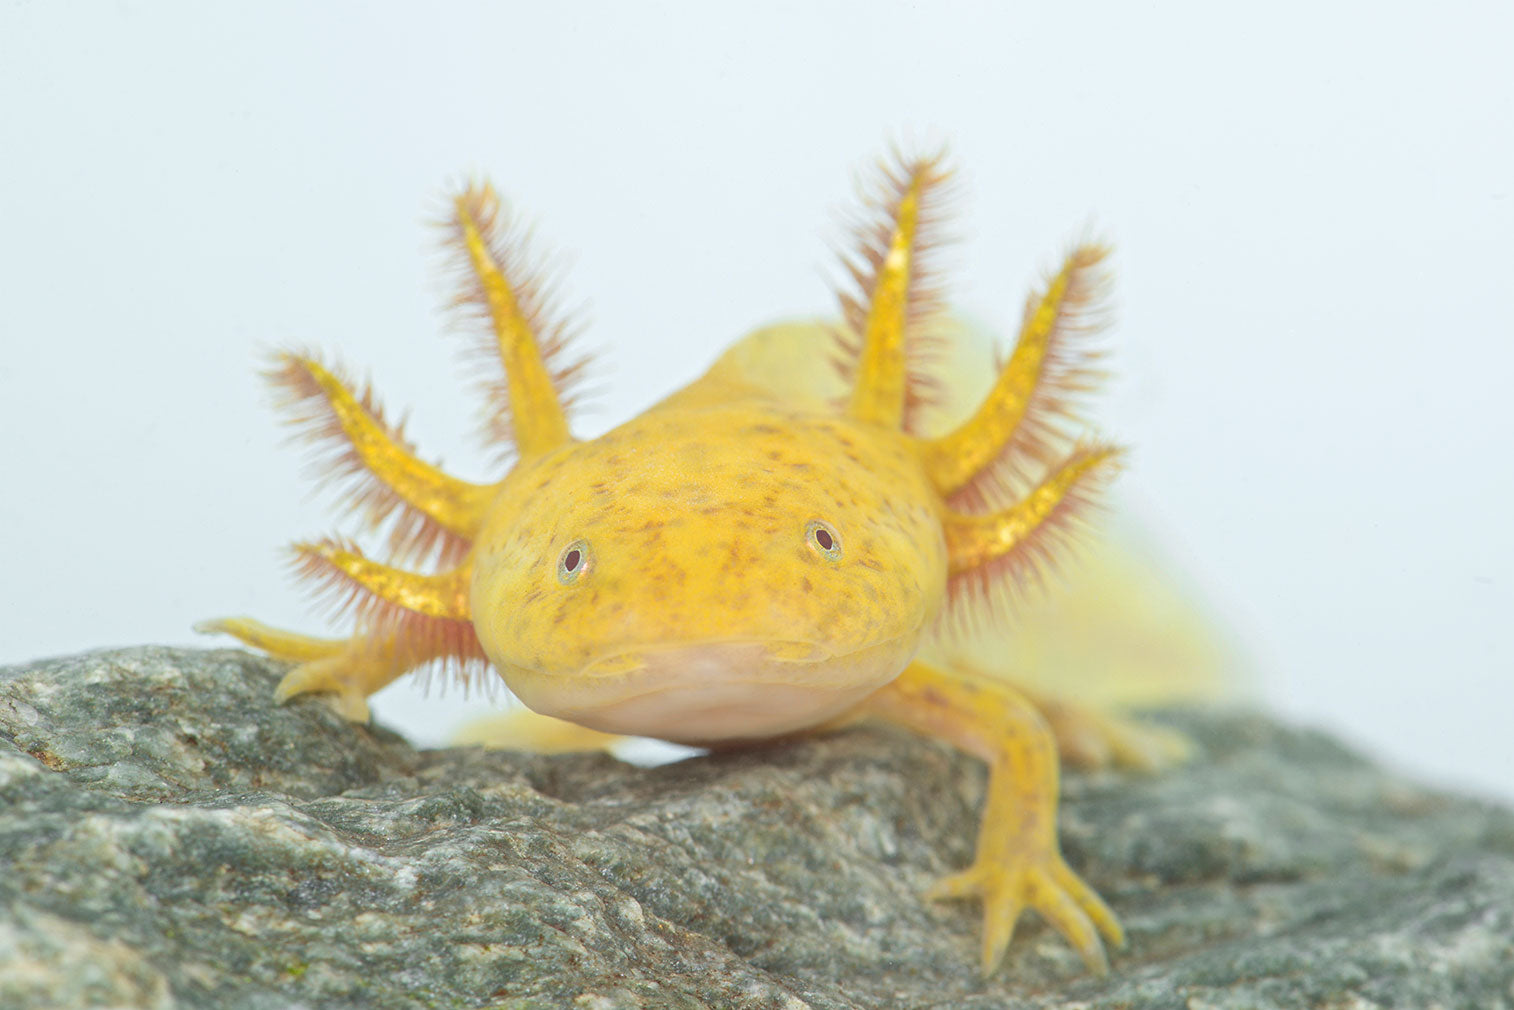 Axolotl food - Food for adult Axolotls, newts and salamanders